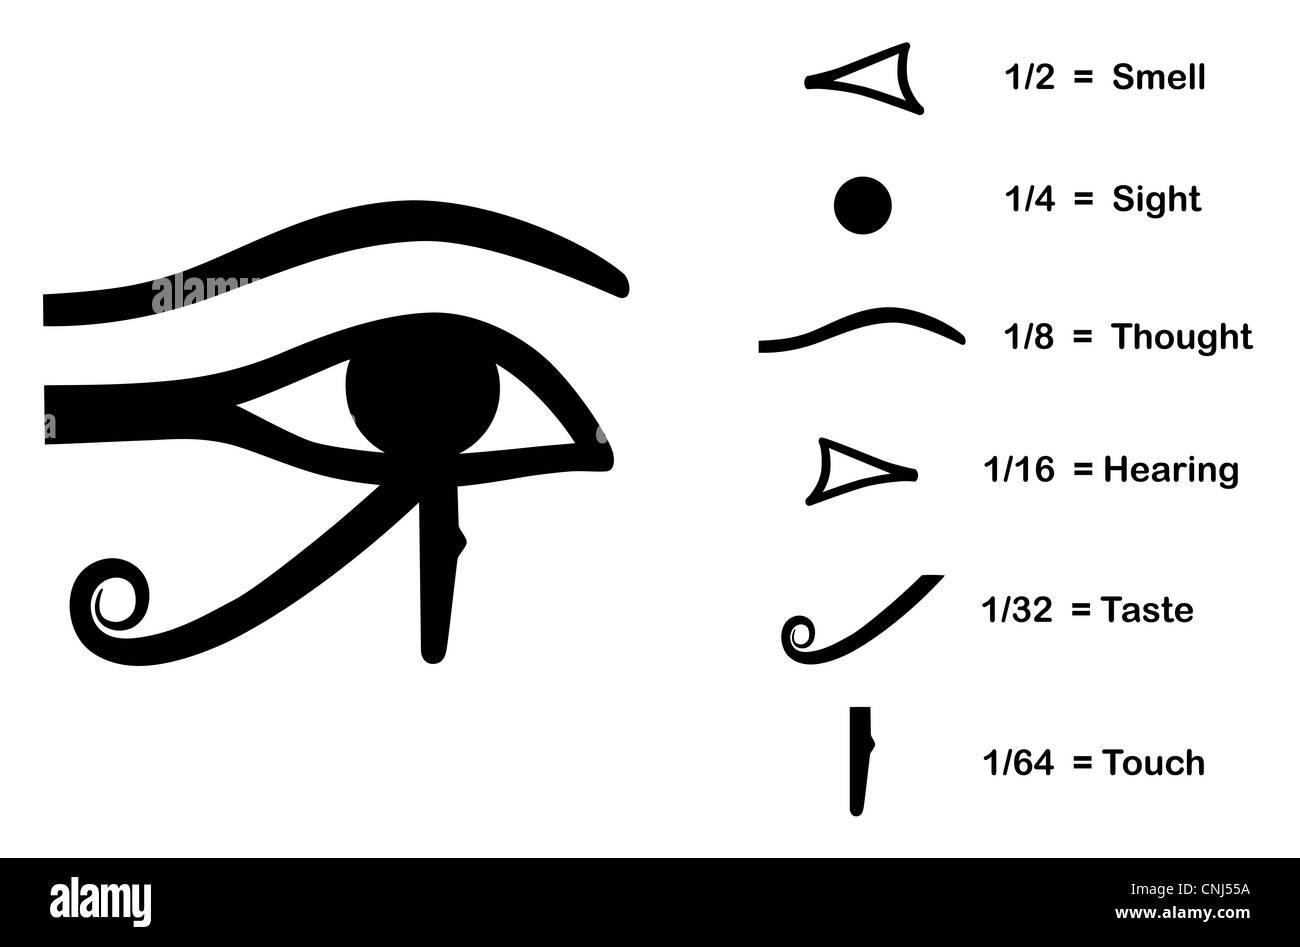 L'occhio di Horus (occhio di Ra, Wadjet) creduto dagli antichi